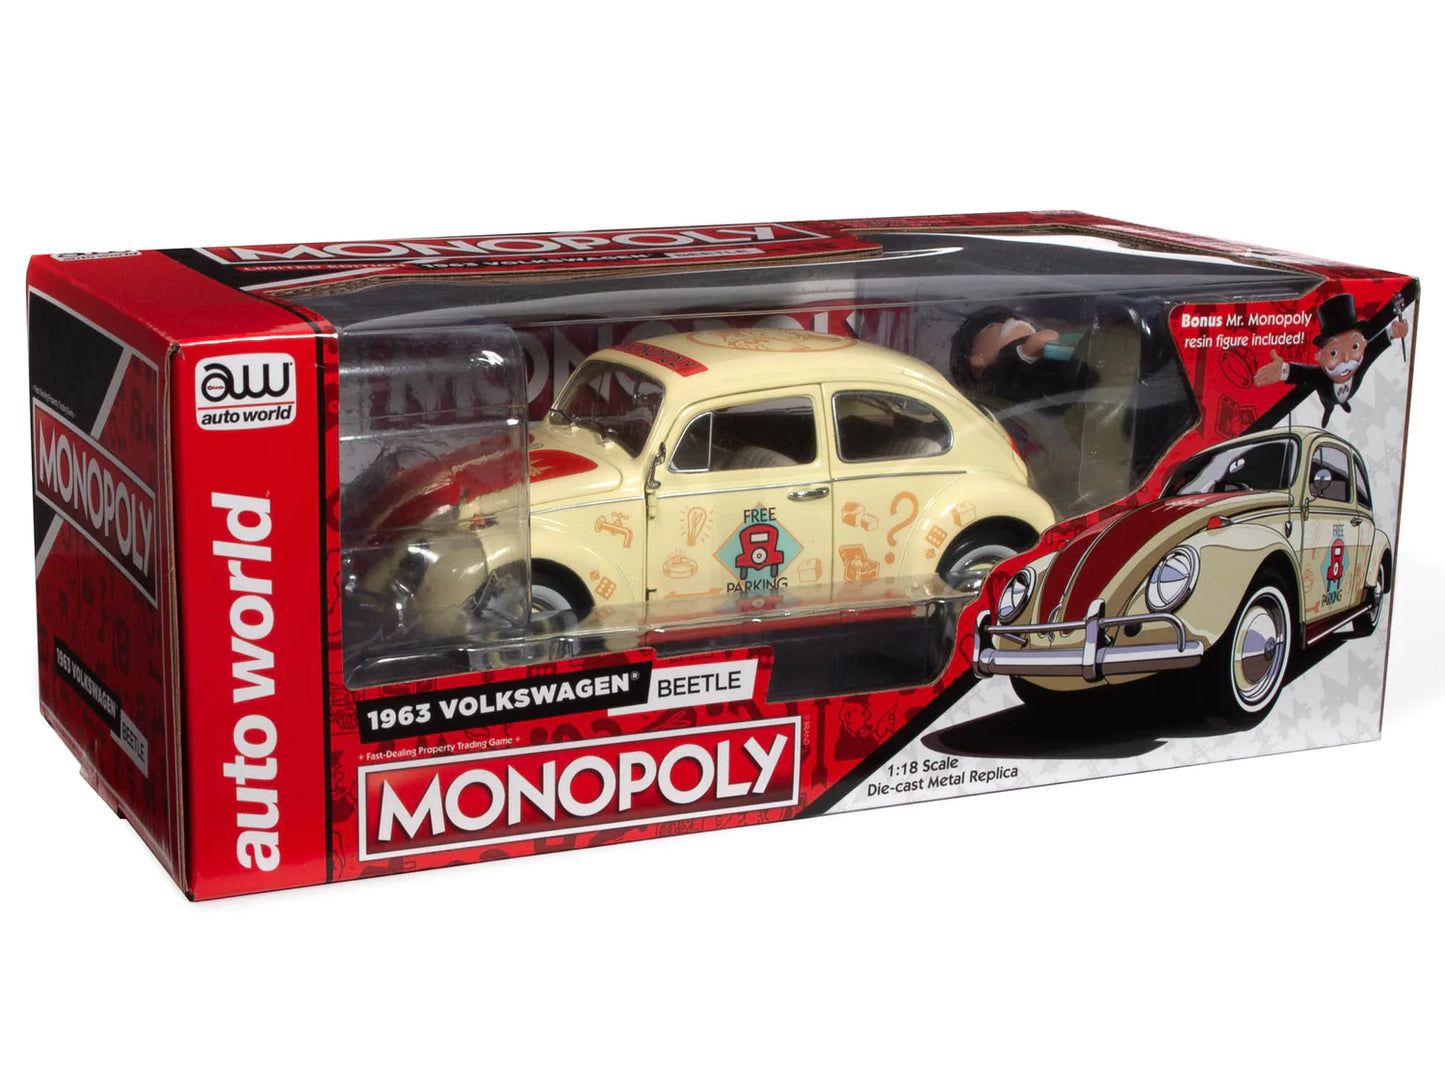 Volkswagen Beetle Monopoly 1963 1/18